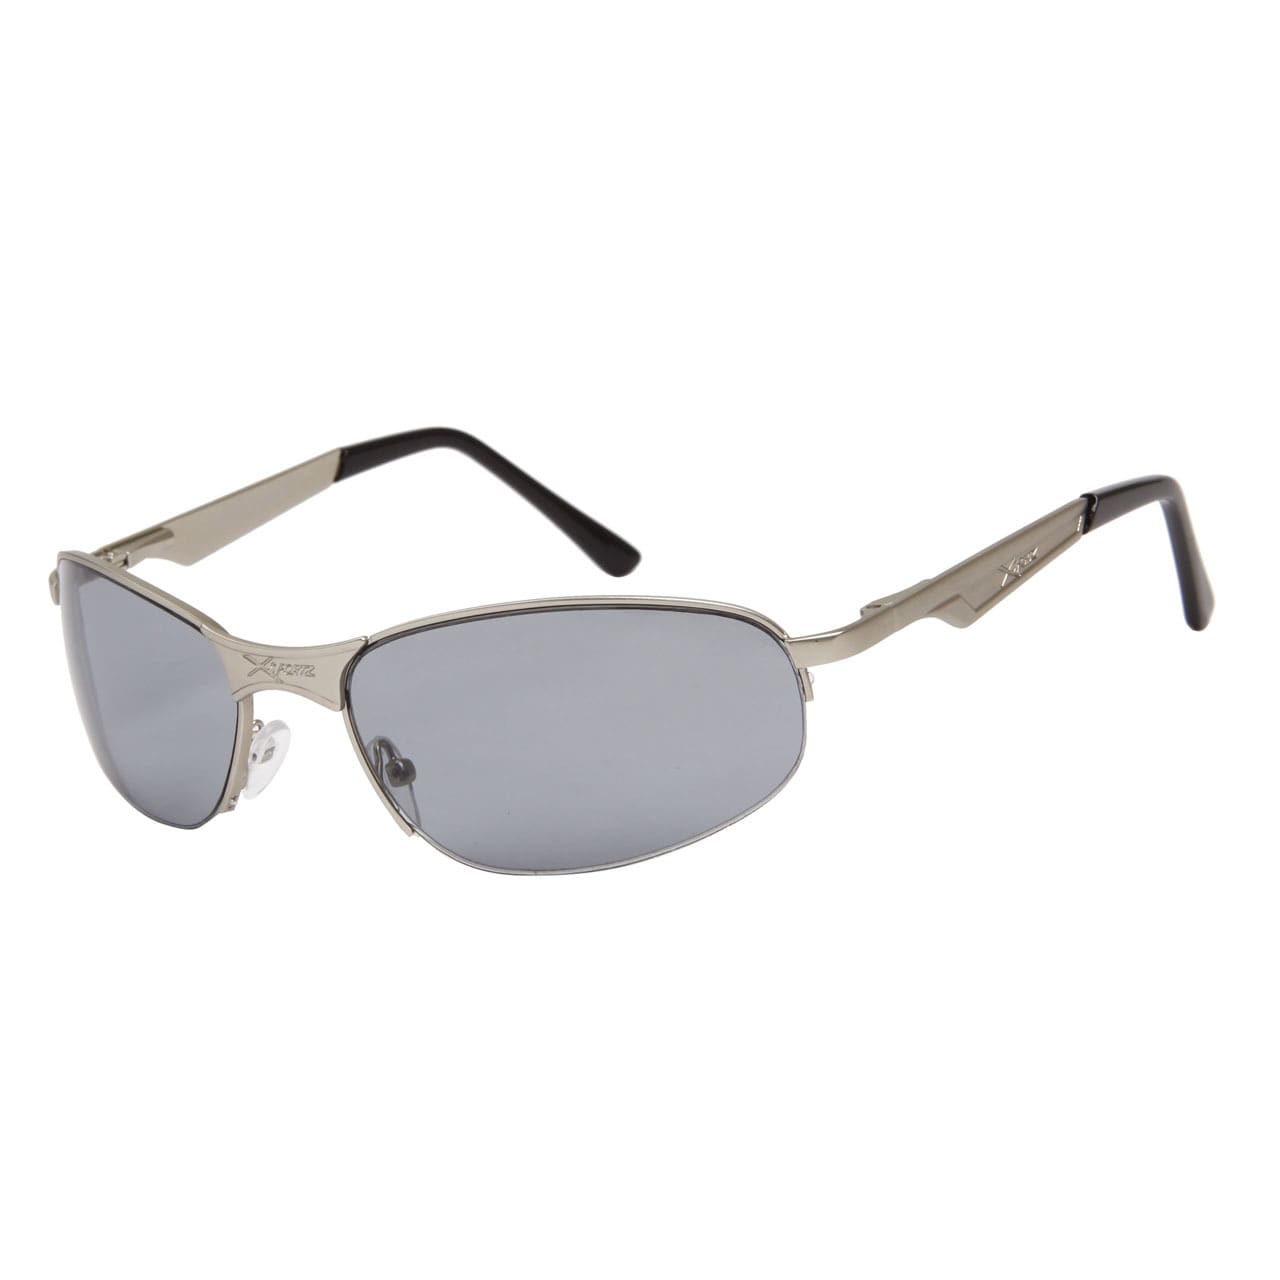 XSPORTZ Solbriller -  Lysegrå glas og sølvfarvet stel